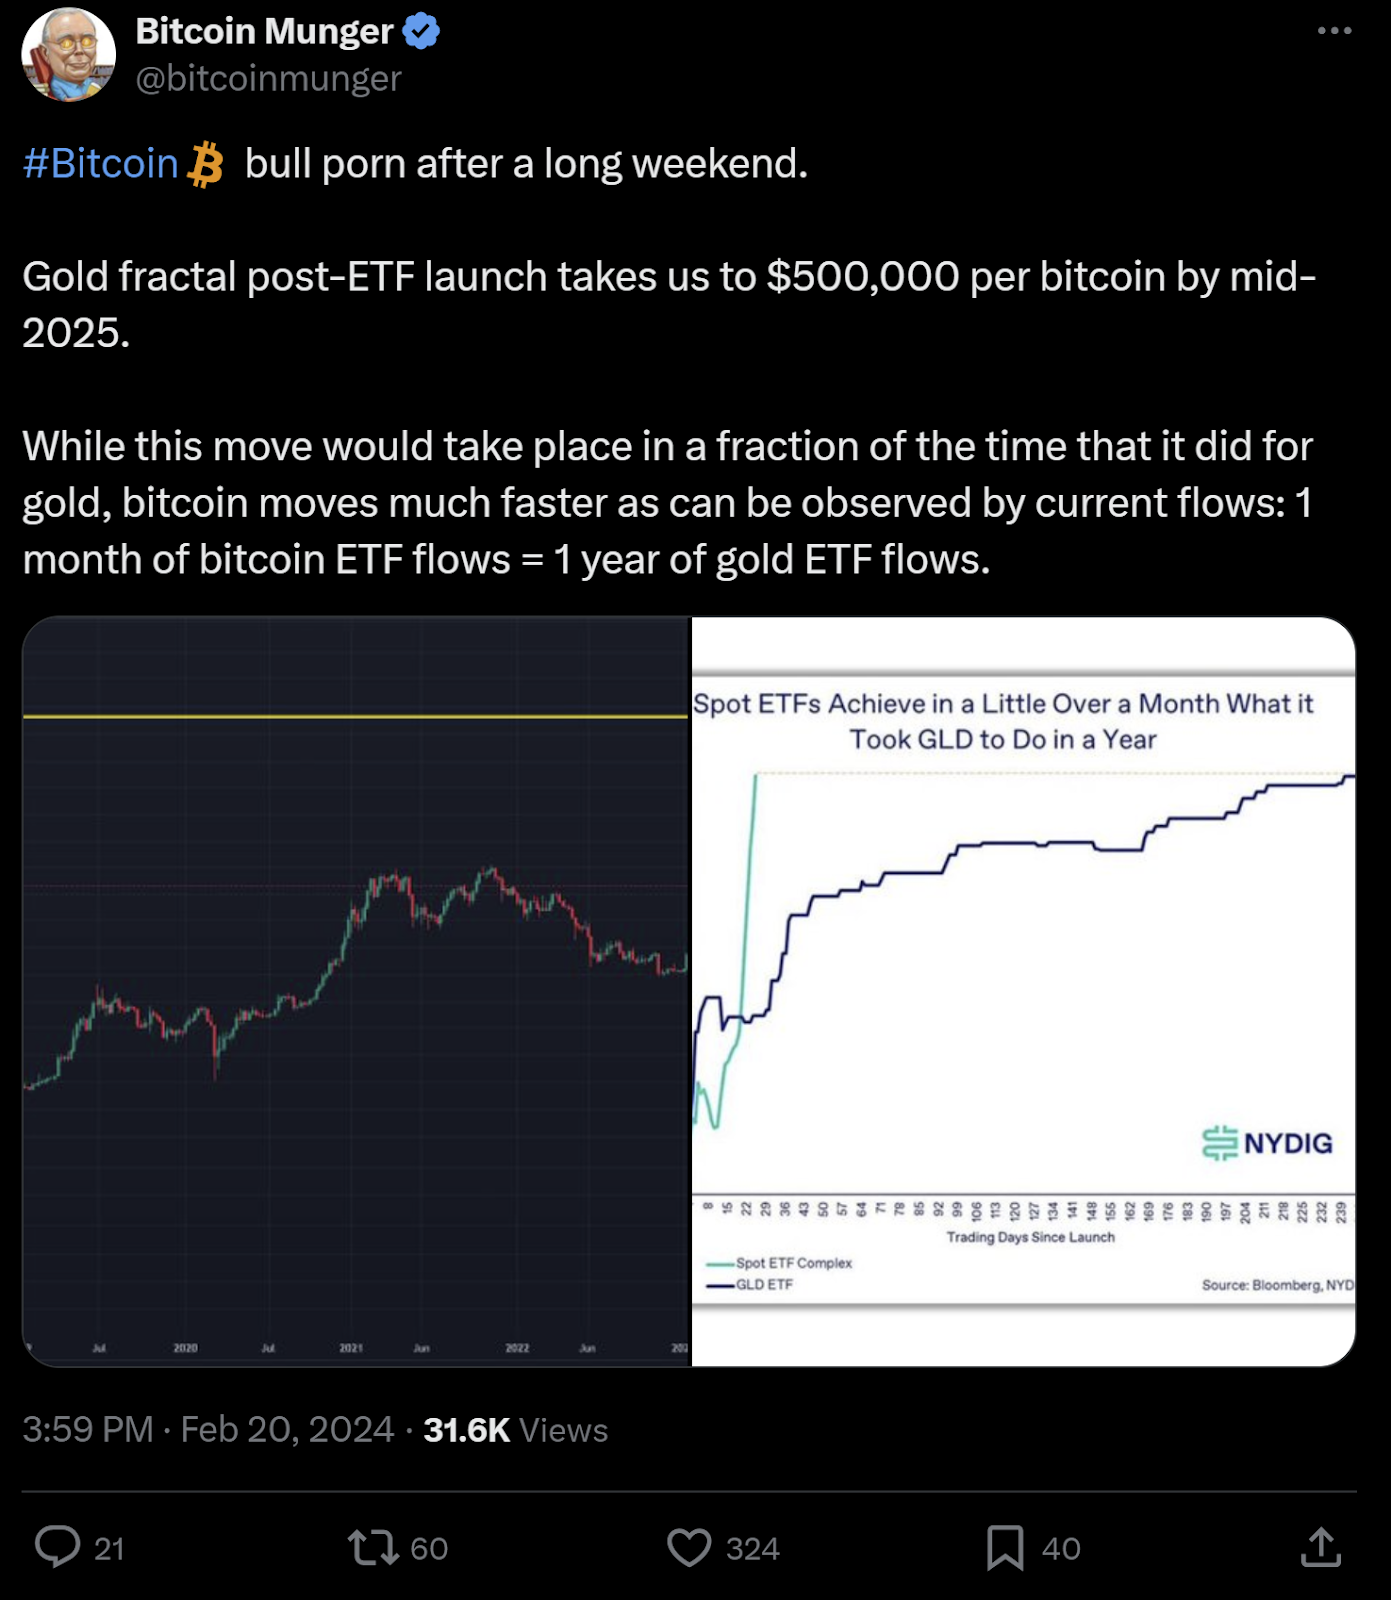 El tuit de Bitcoin Munger destaca el rápido potencial de crecimiento de bitcoin, comparando las entradas de ETF con las del oro.